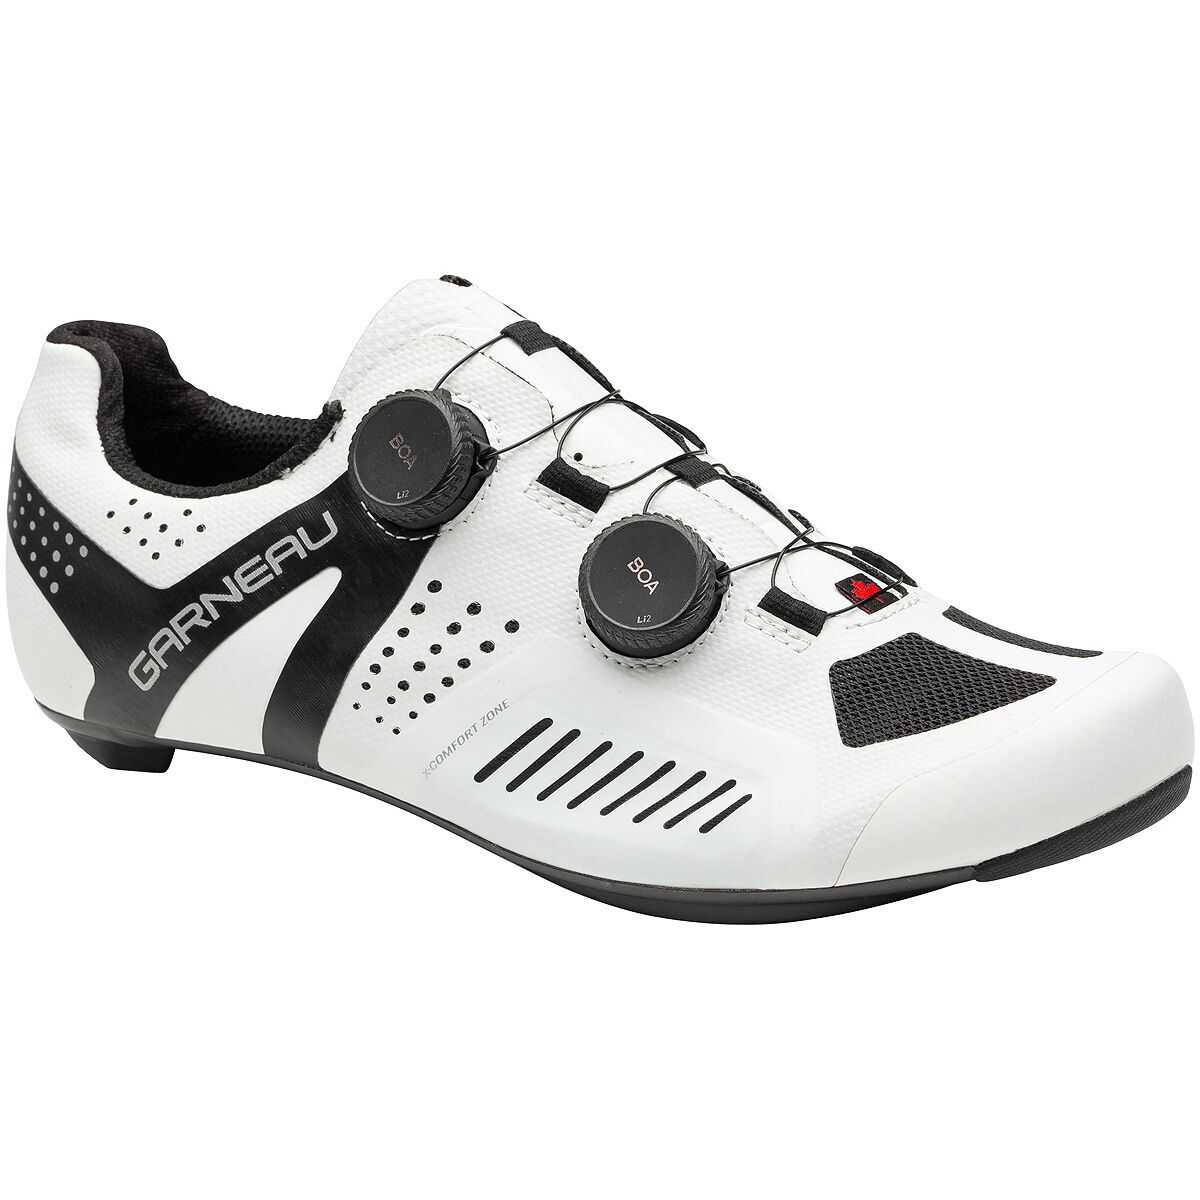 Louis garneau womens road cycling shoes size 36 euro 4.5 us (8080-29)